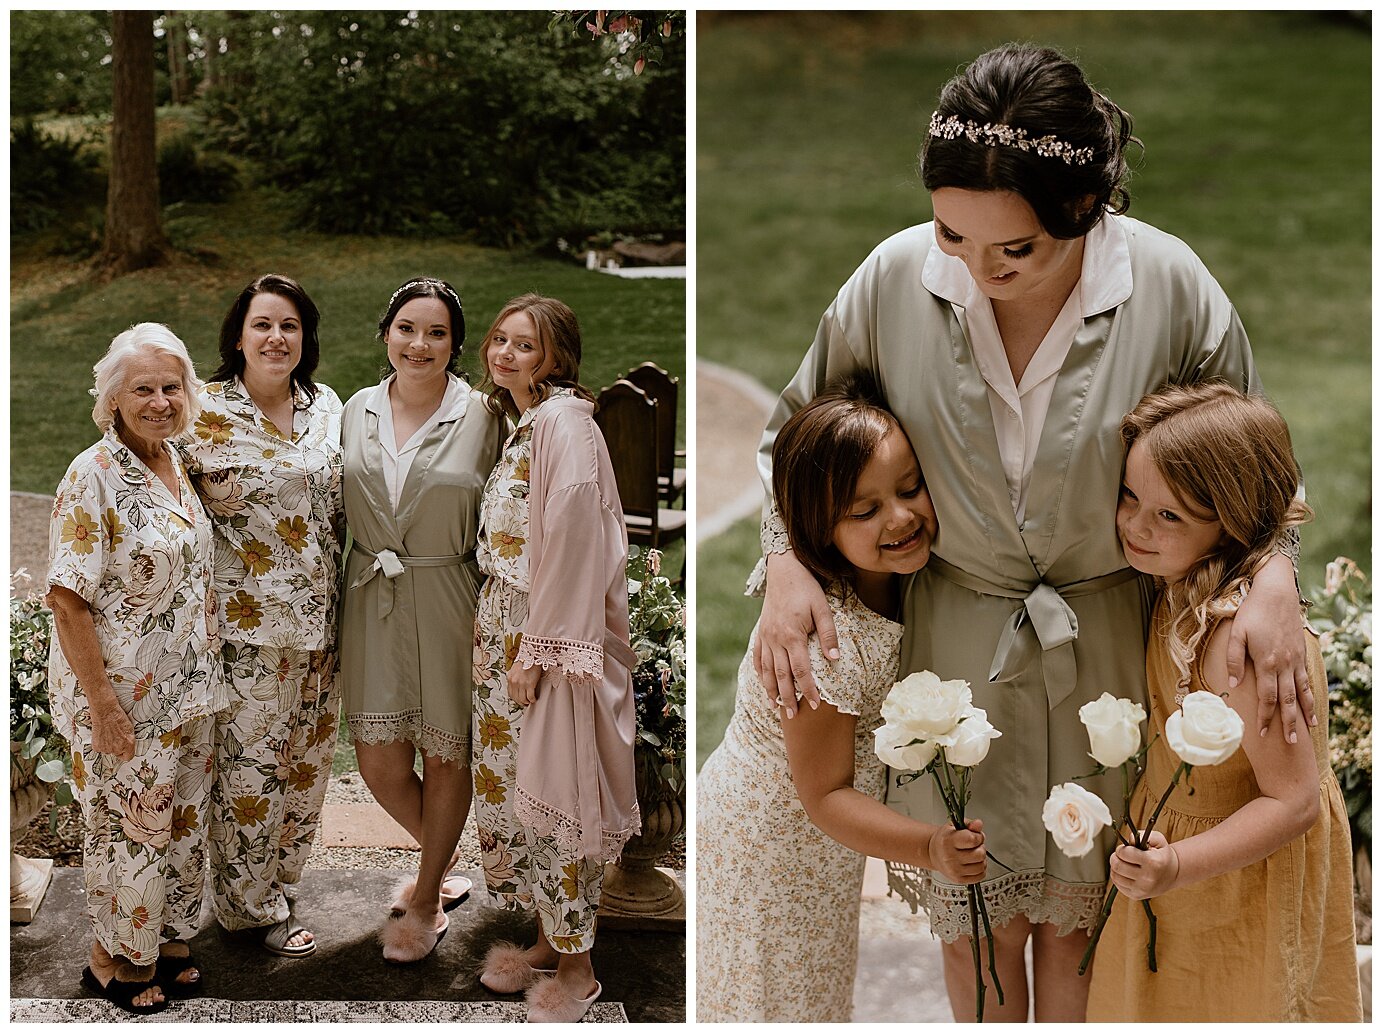 Battle Ground Washington Backyard Wedding - Madeline Rose Photography - Oregon Wedding Photographer_0002.jpg